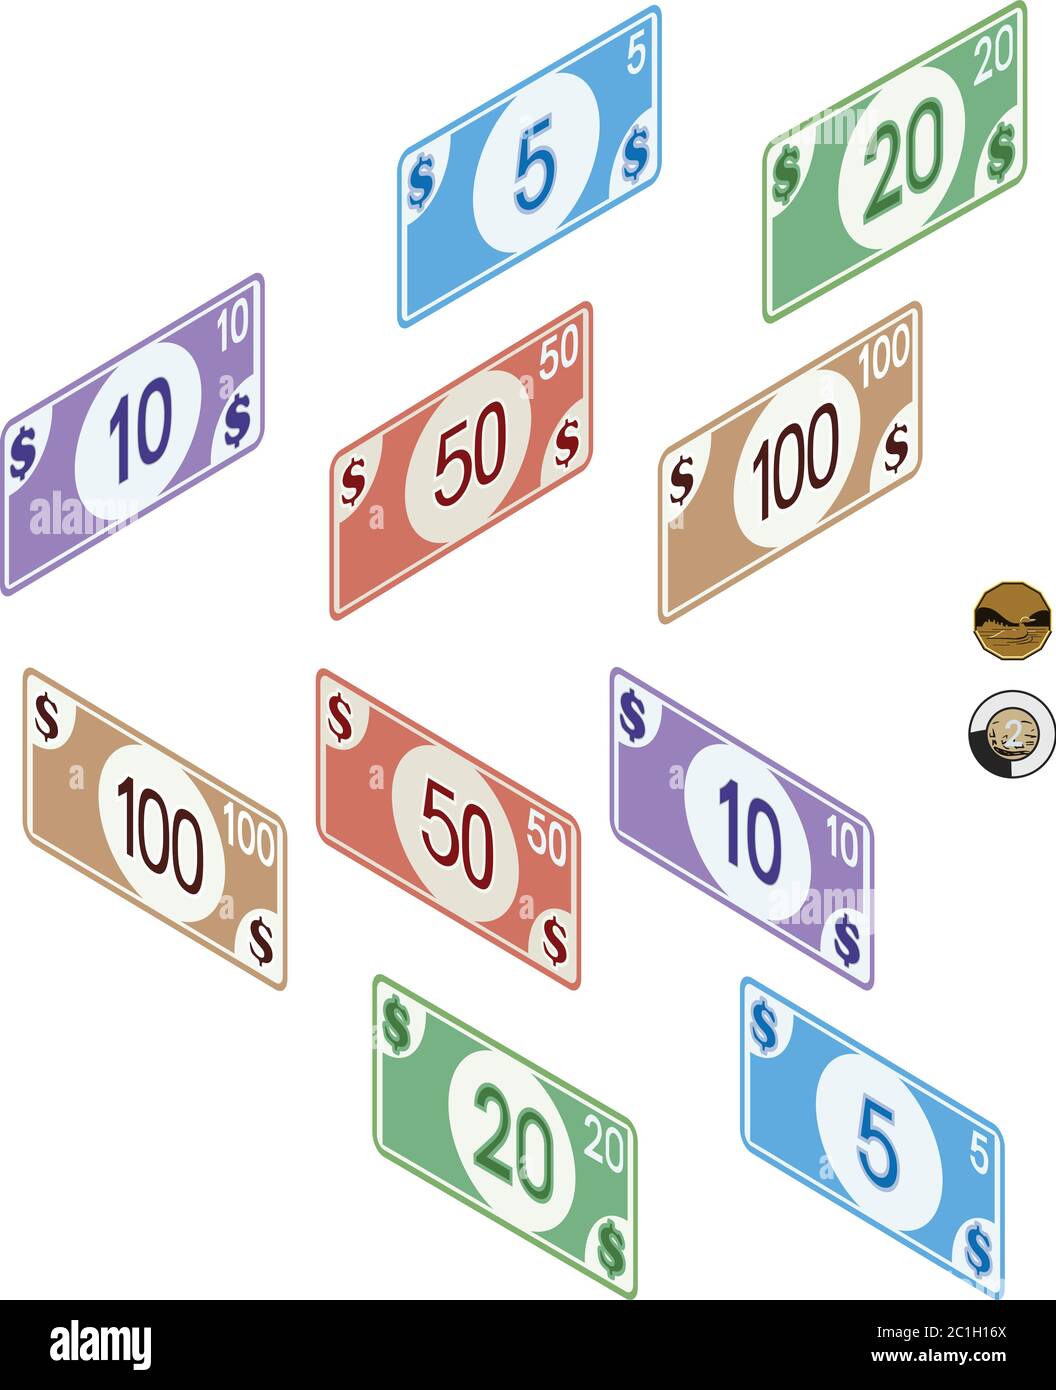 Geld, Wechsel 5, 10, 20, 50 & 100, Münzen 1&2 Dollar. Full Color Graphic Renderings Stock Vektor